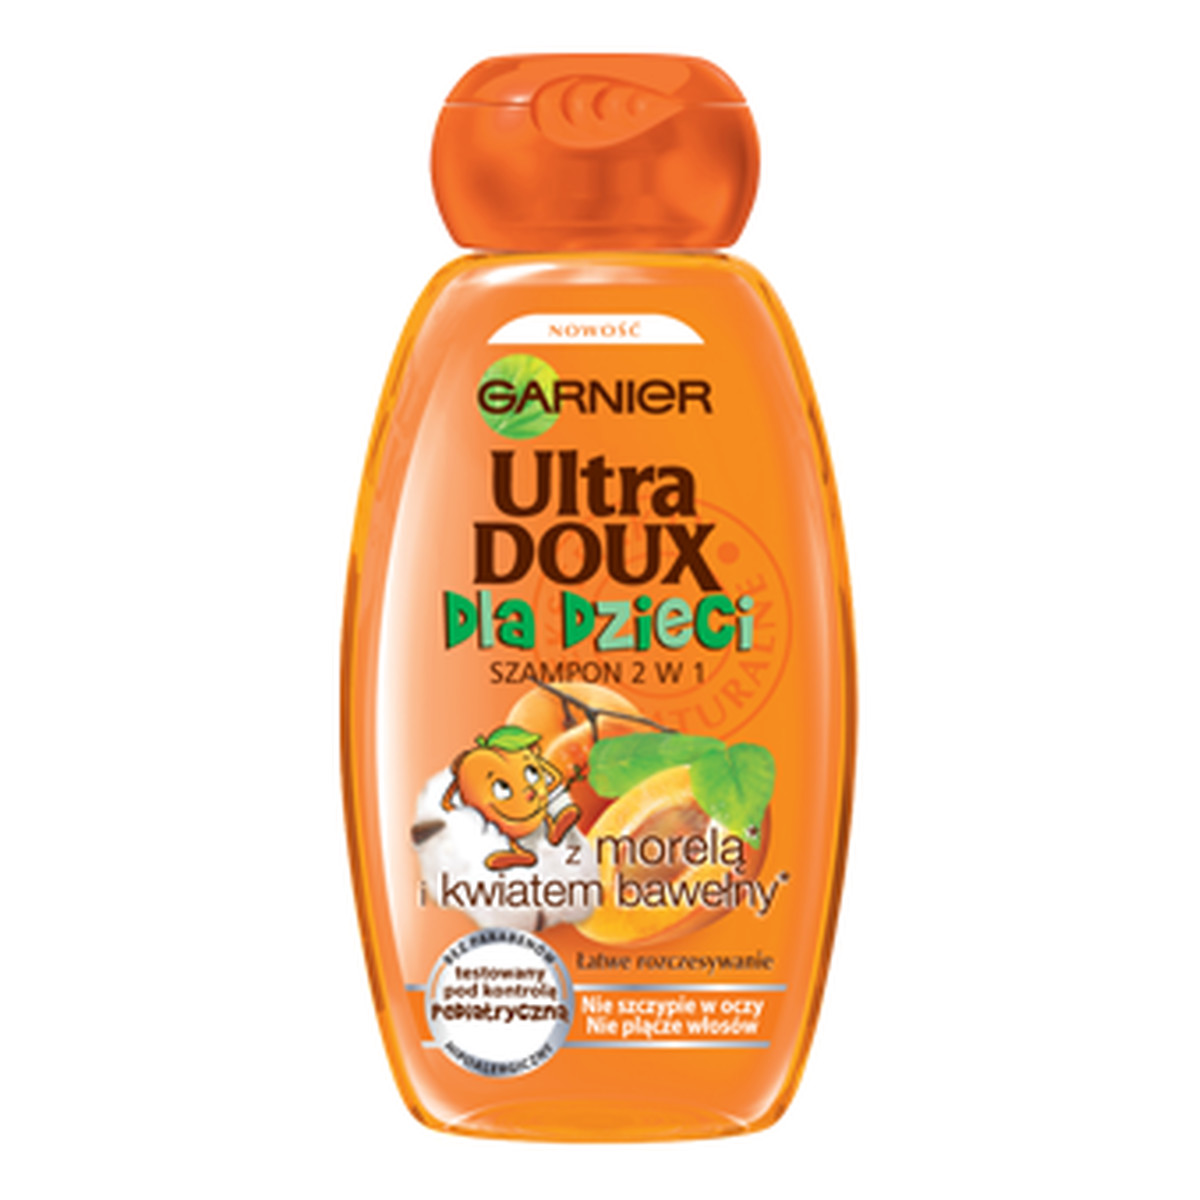 szampon ultra doux dla dzieci morela